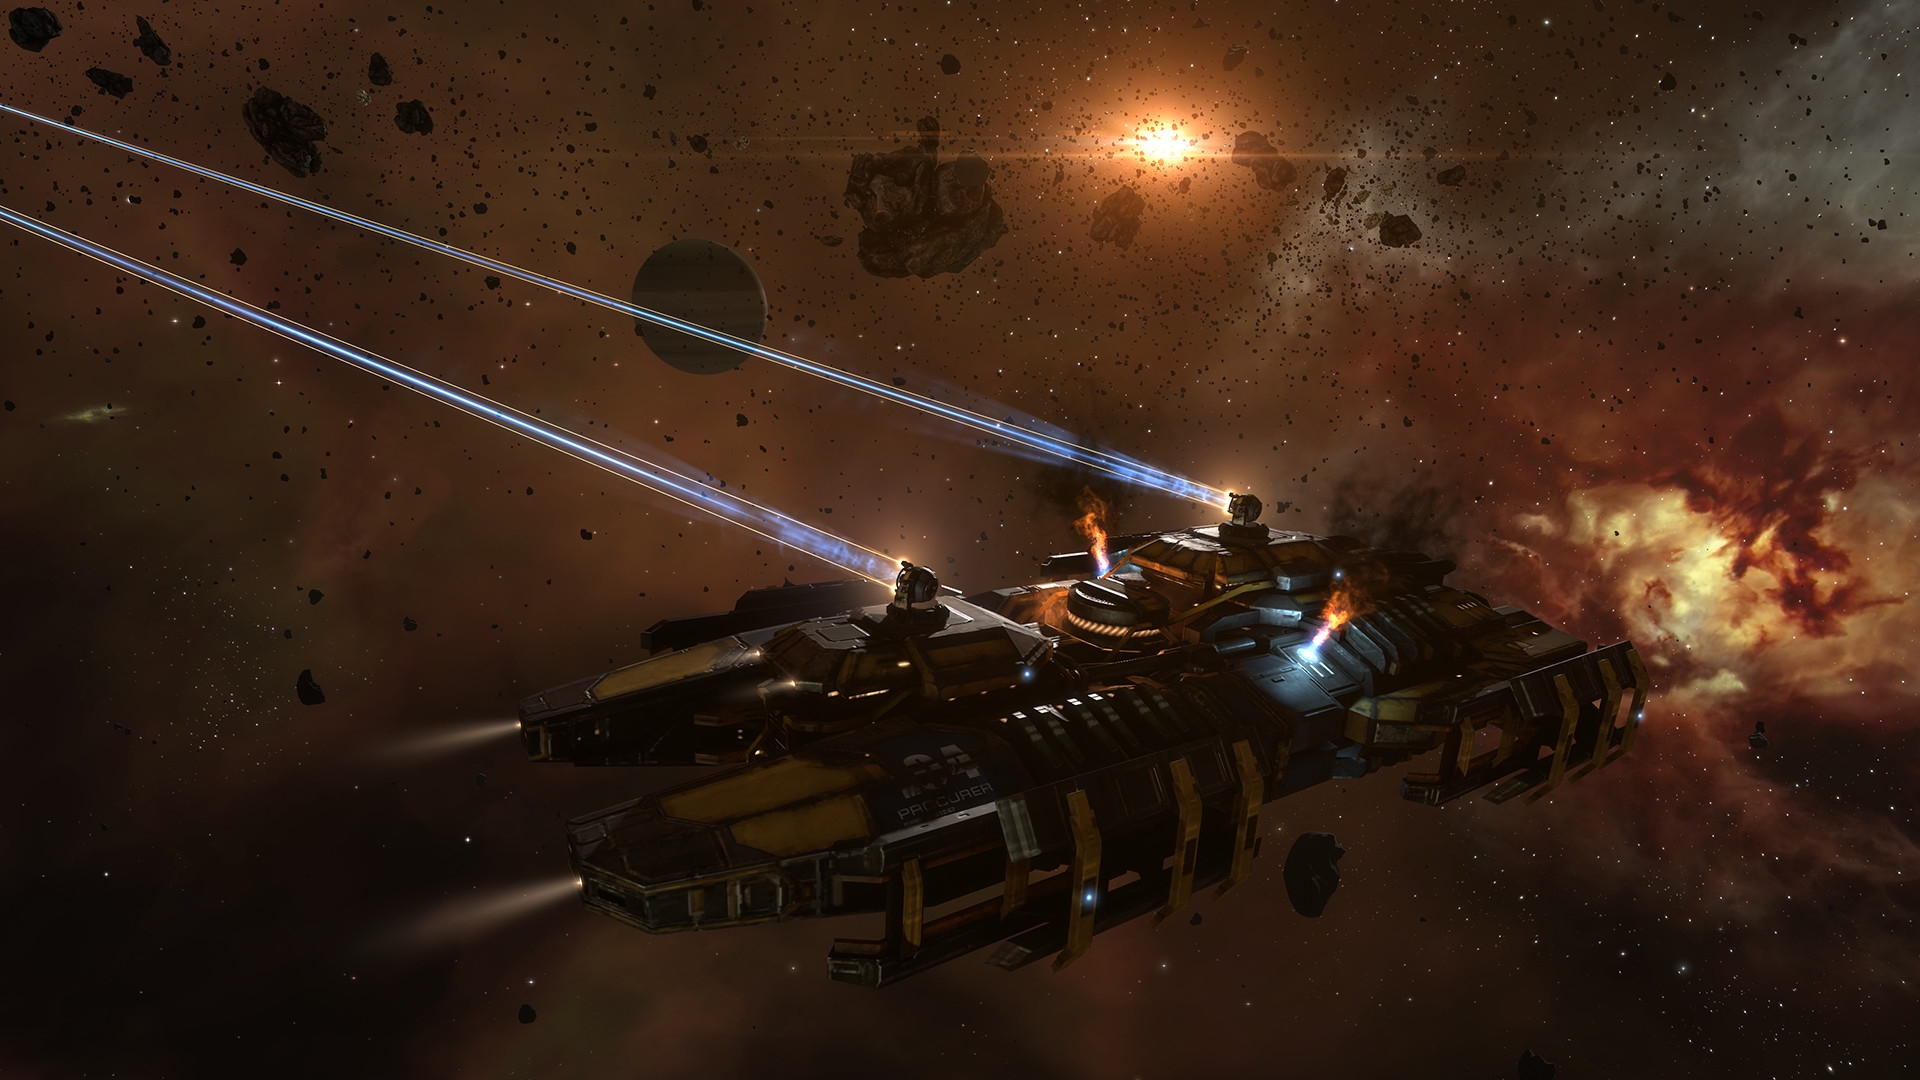 MMO Gratis Terbaik: Eve Online. Gambar menunjukkan pesawat ruang angkasa menembakkan laser di ruang angkasa